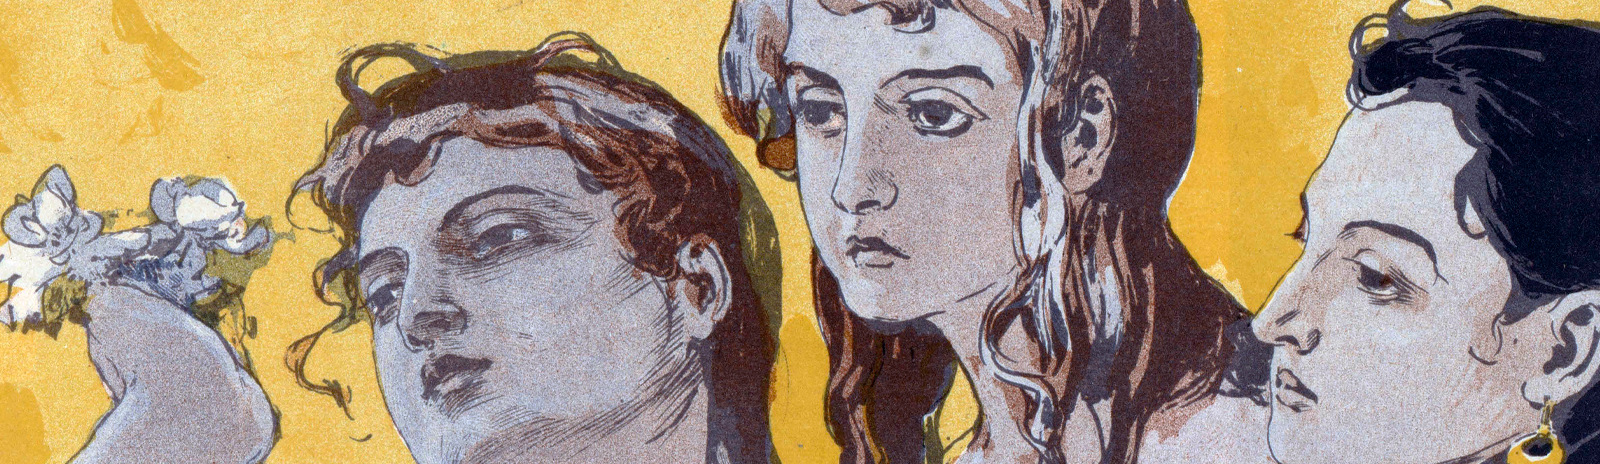 Фоновое изображение Выставка картин, этюдов и рисунков кружка Мюссаровских понедельников